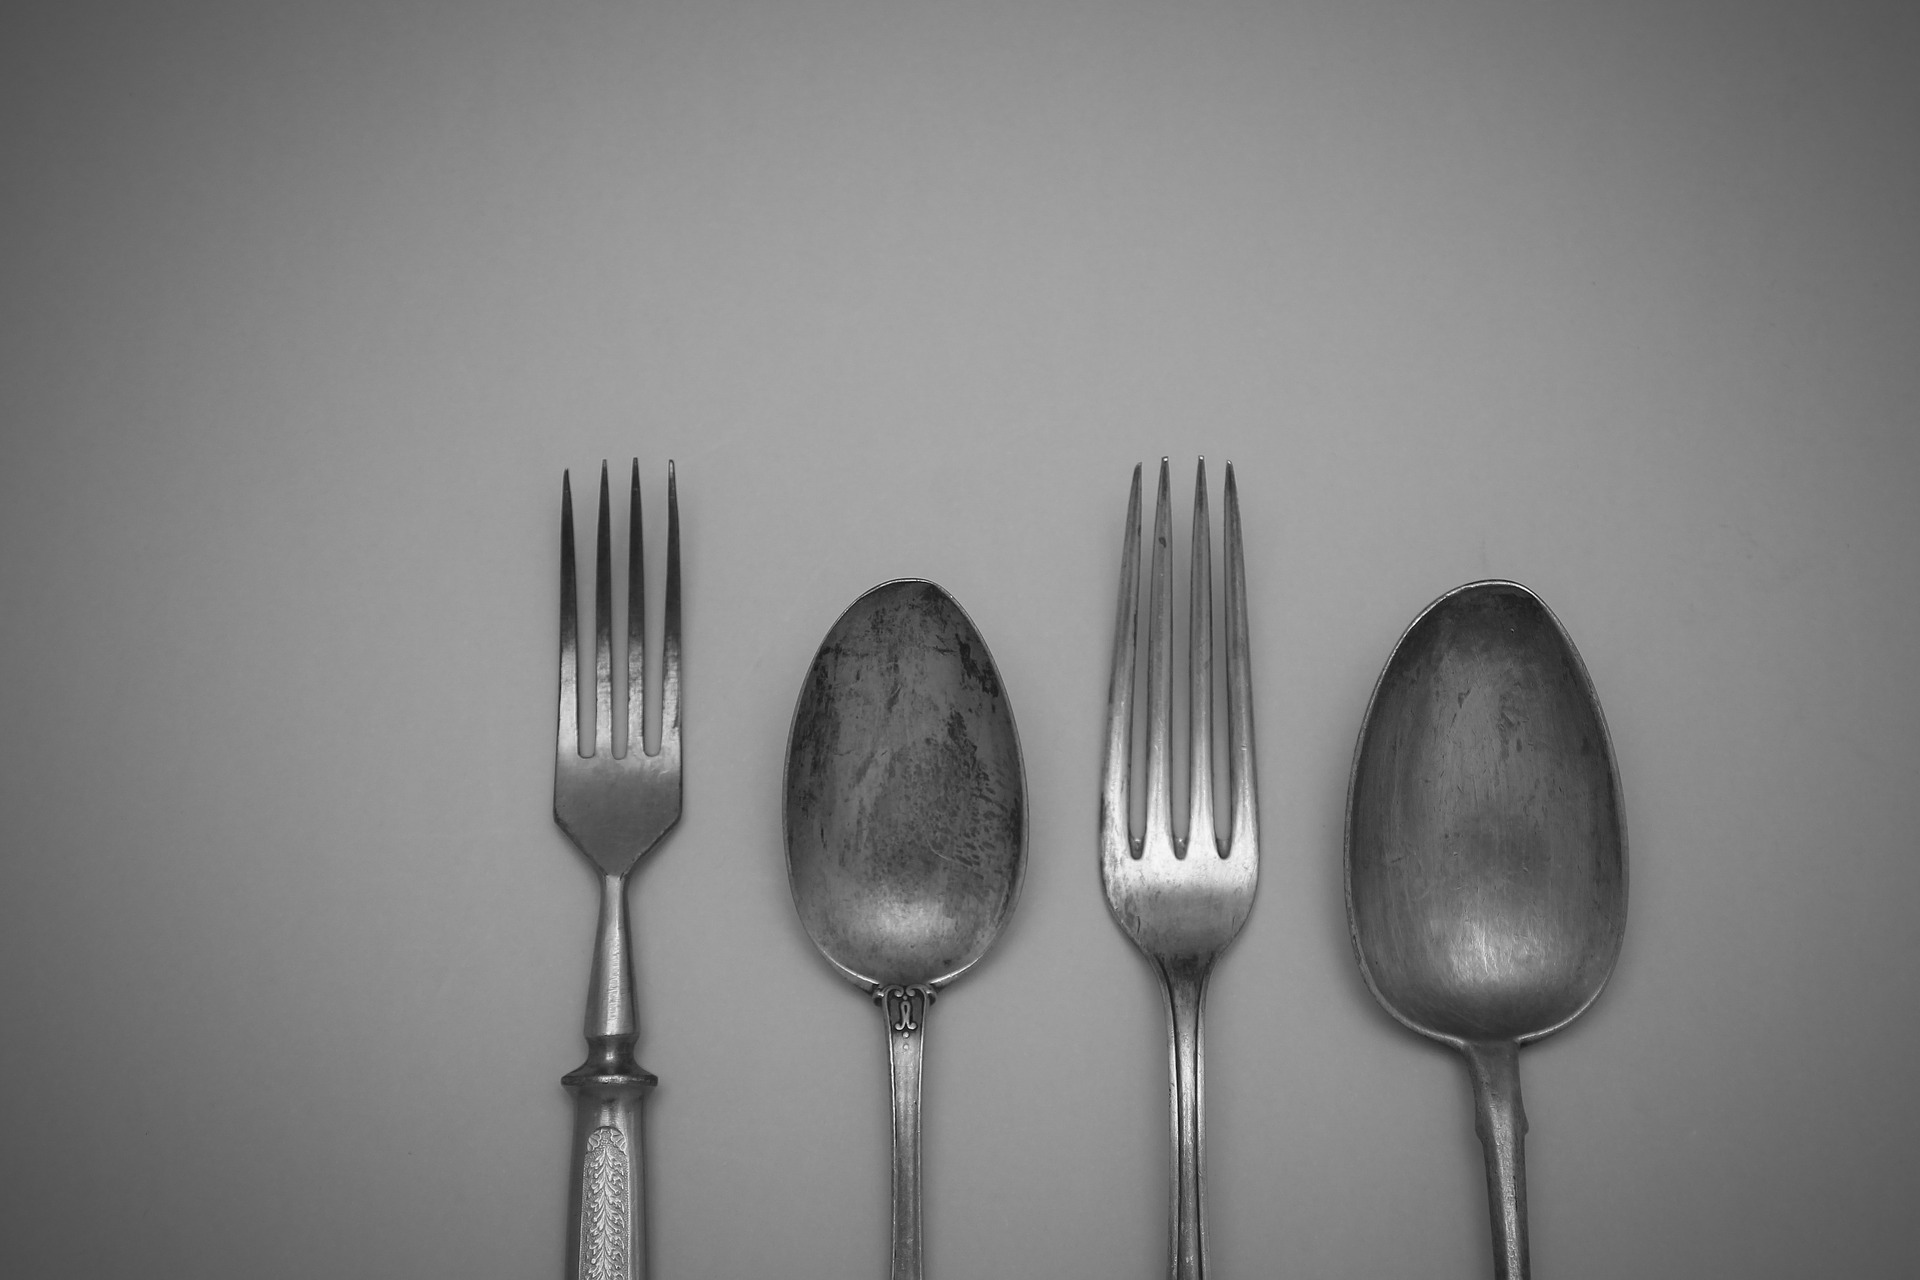 Fotografija prikazuje pribor za jelo, dvije vilice i žlice načinjene od srebra.